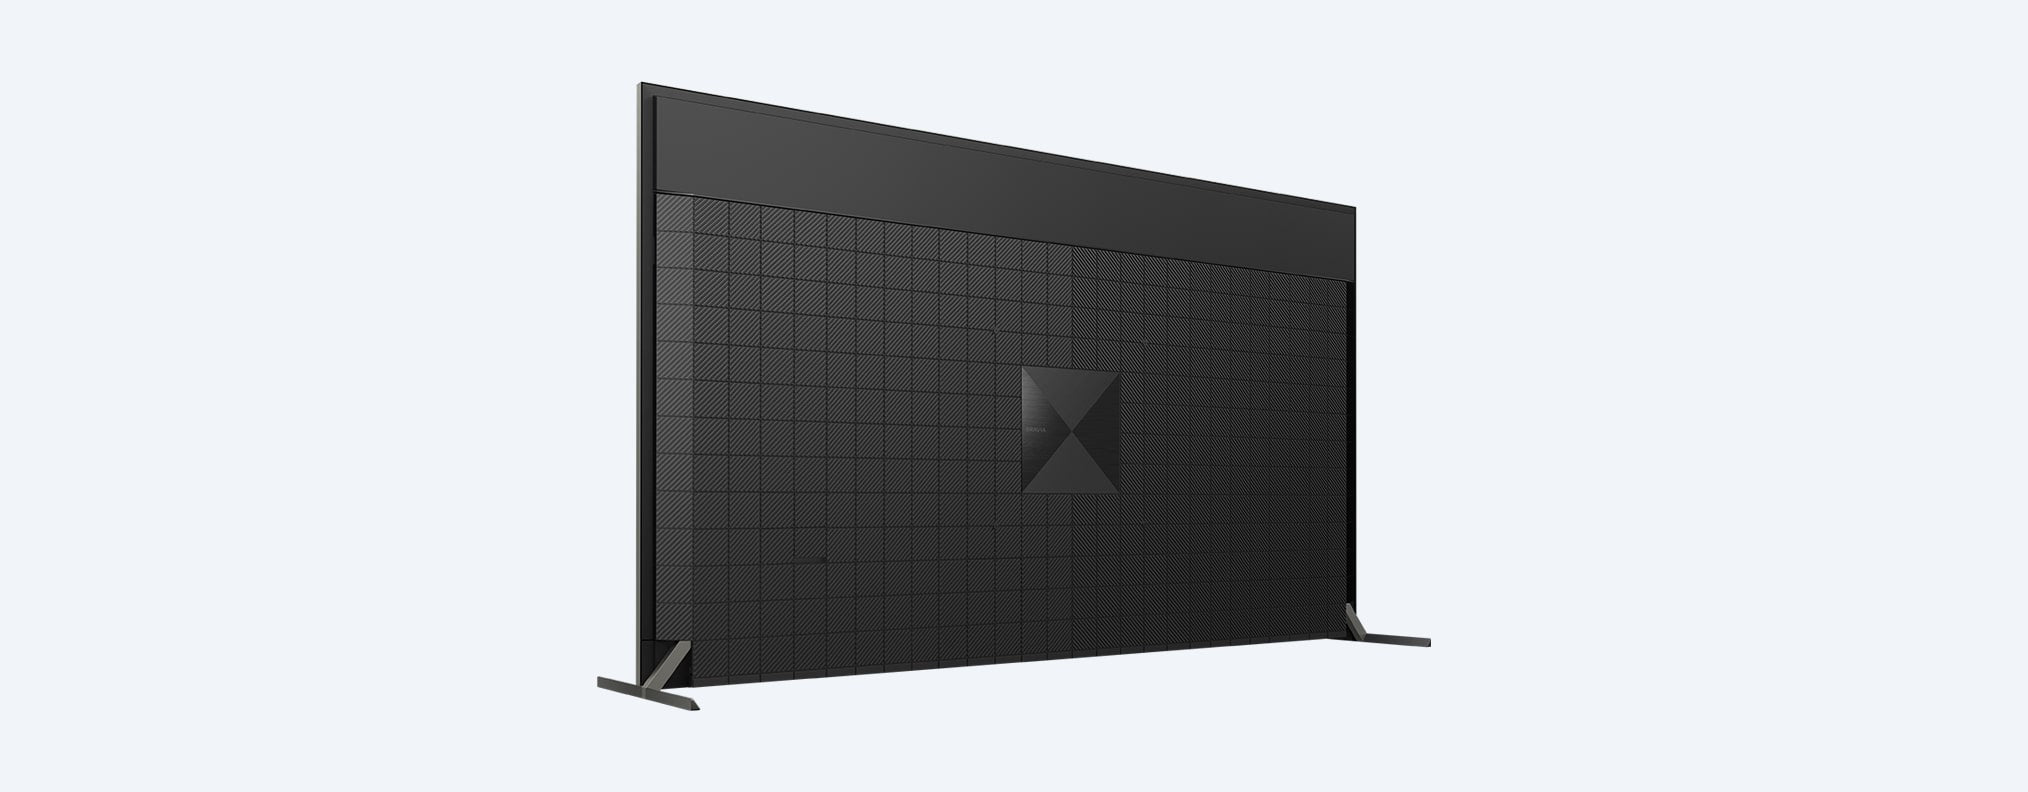 X95J | BRAVIA XR | Full Array LED | 4K Ultra HD | טווח דינמי גבוה (HDR) | טלוויזיה חכמה (Google TV)